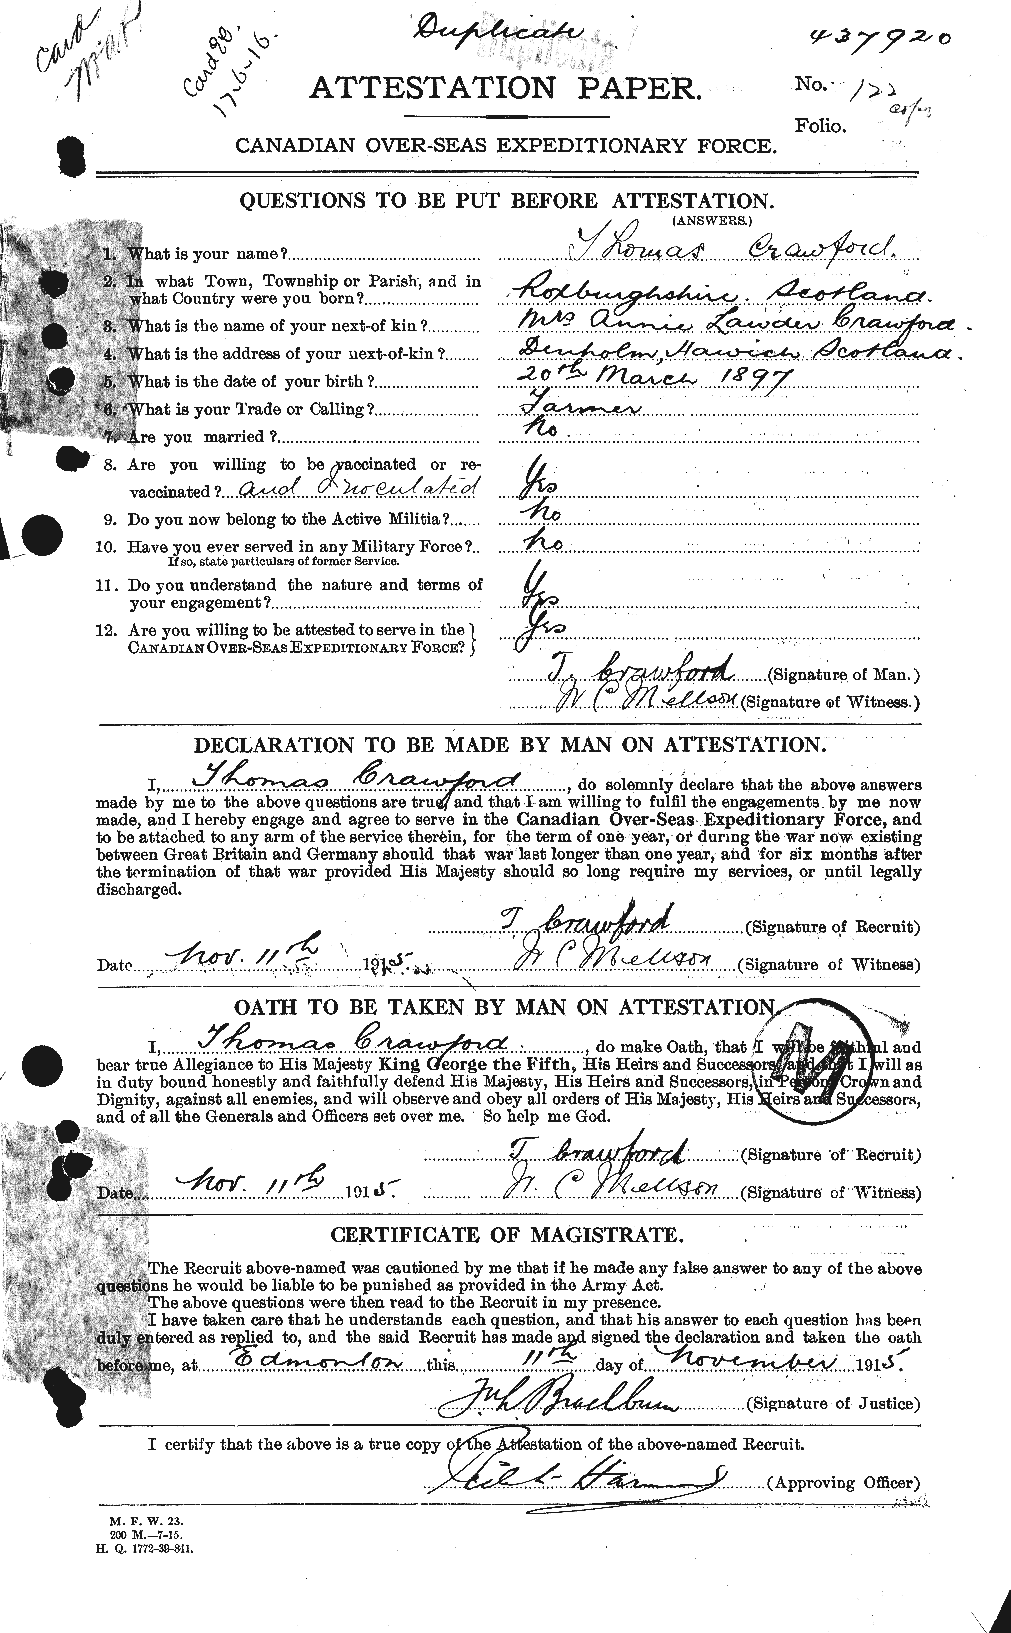 Dossiers du Personnel de la Première Guerre mondiale - CEC 061357a